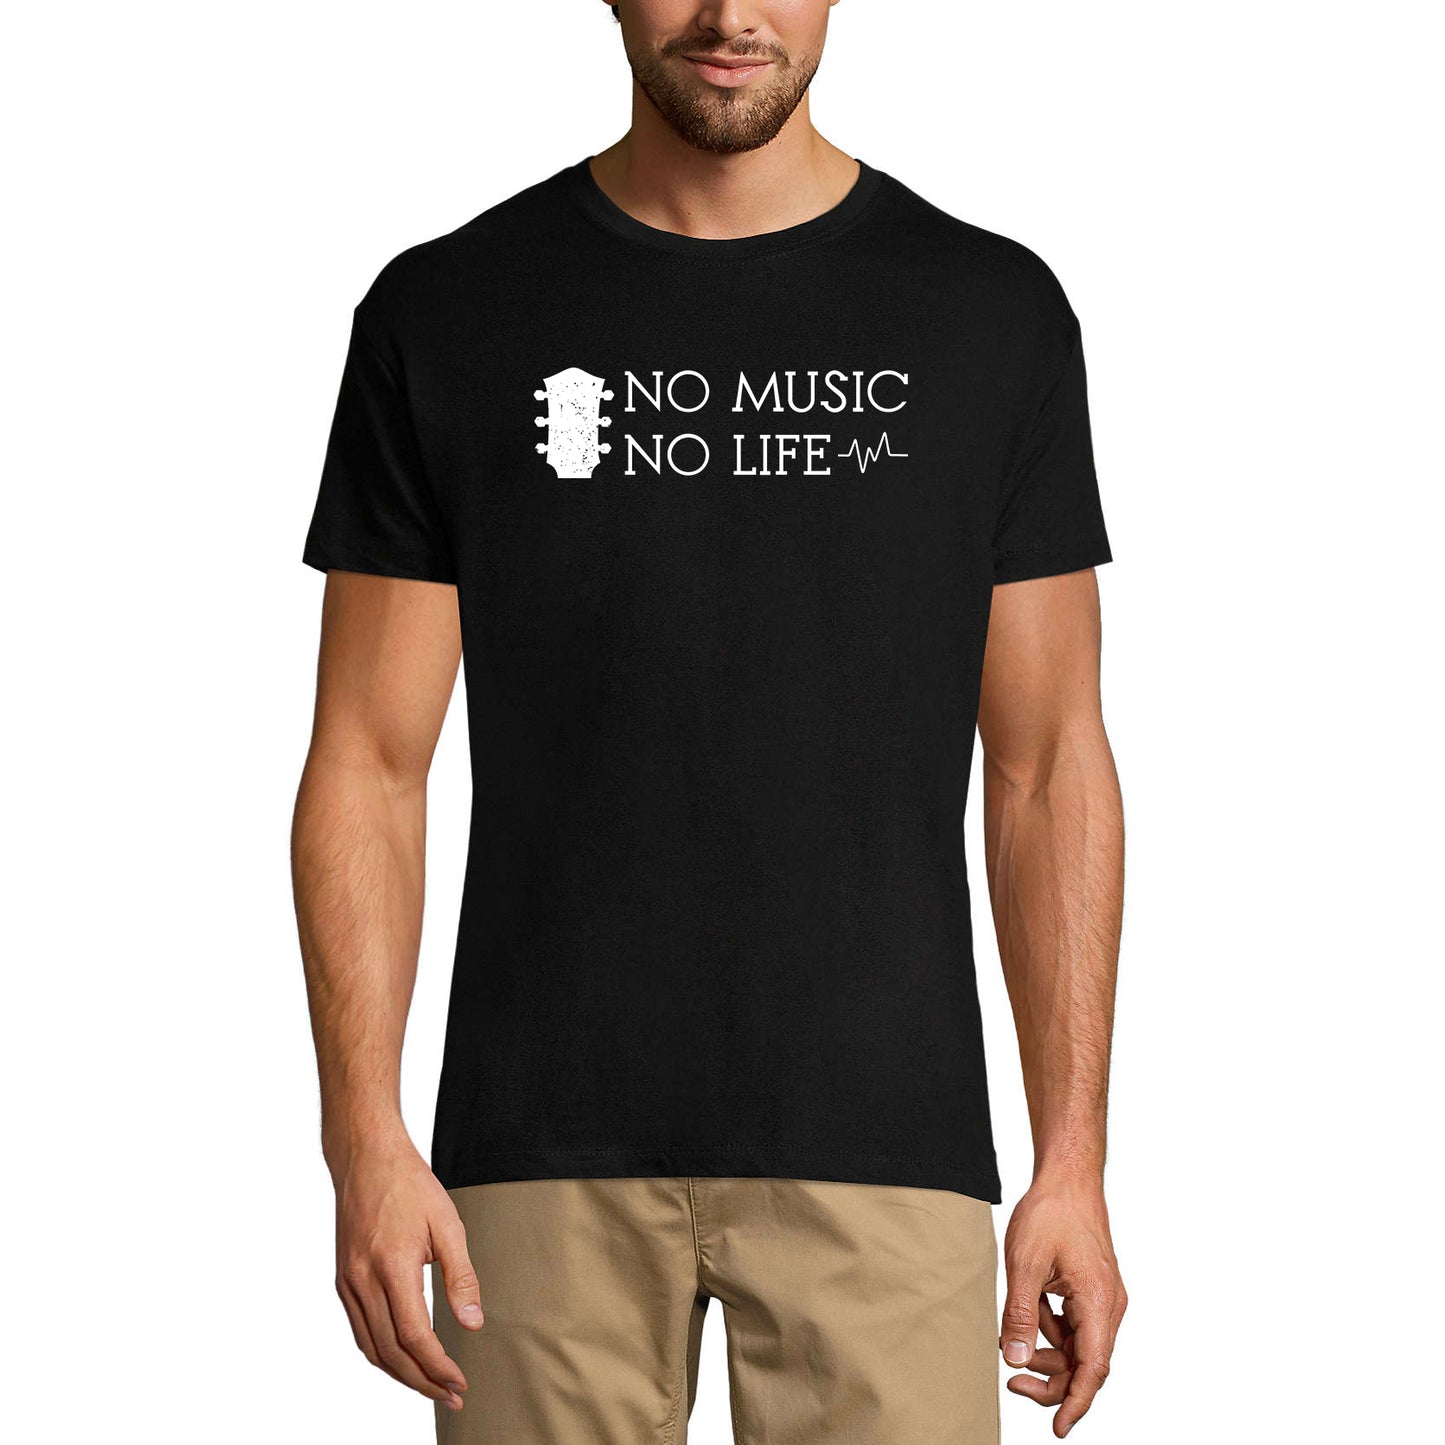 ULTRABASIC Men's Music T-Shirt No Music No Life - Saying Shirt for Musician